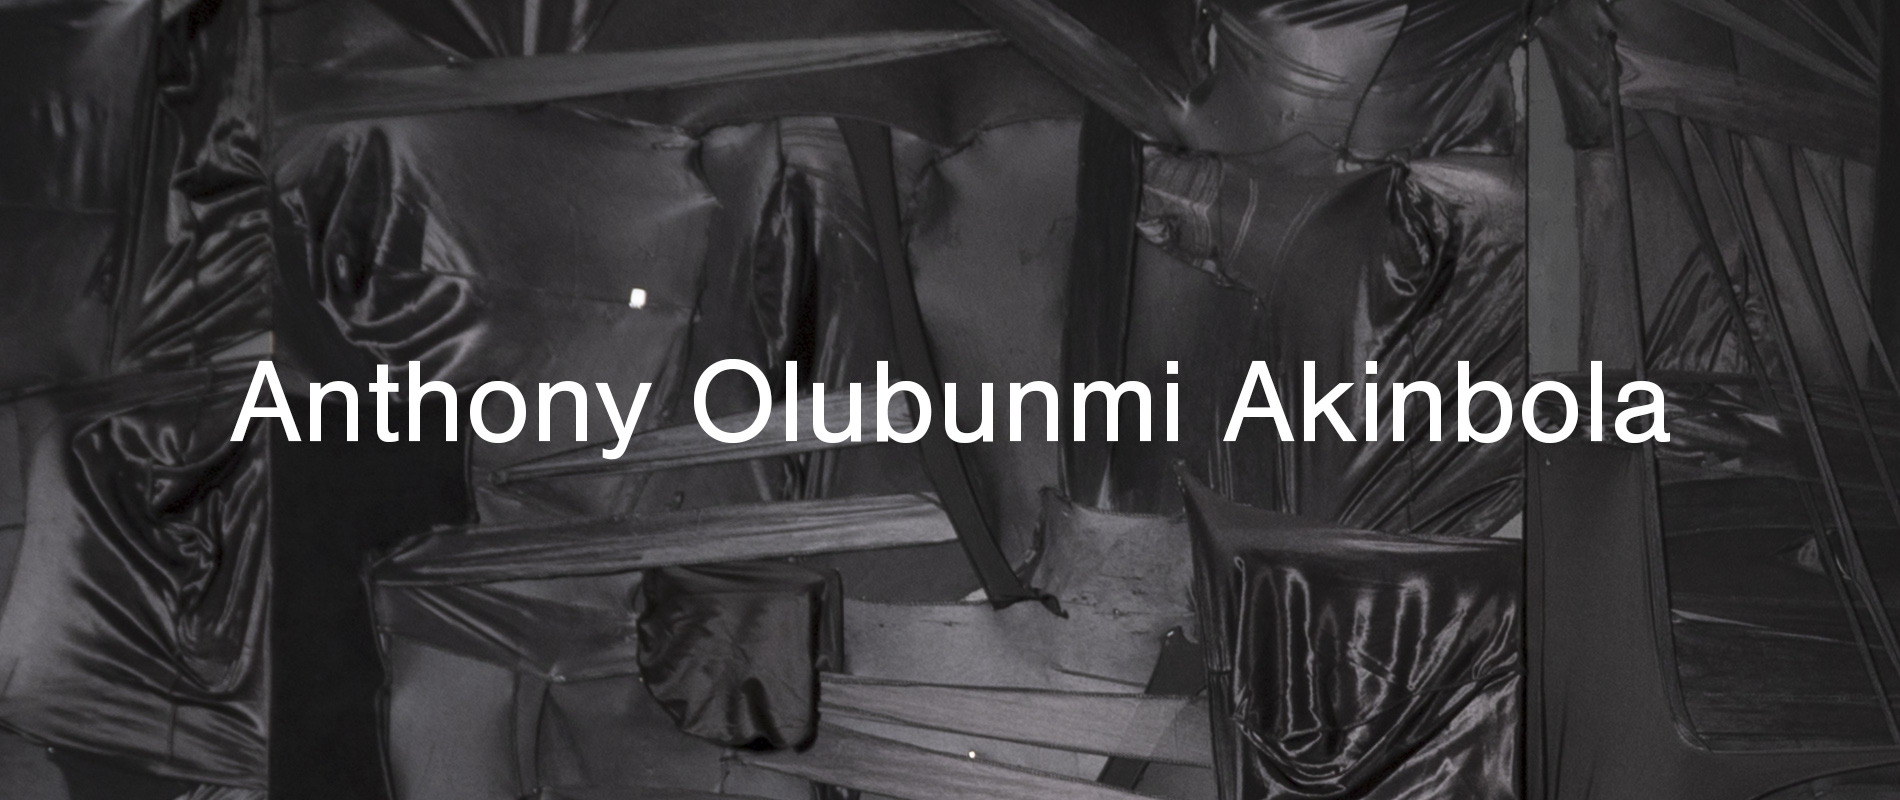 UAM Anthony Olumbumni Akinbola